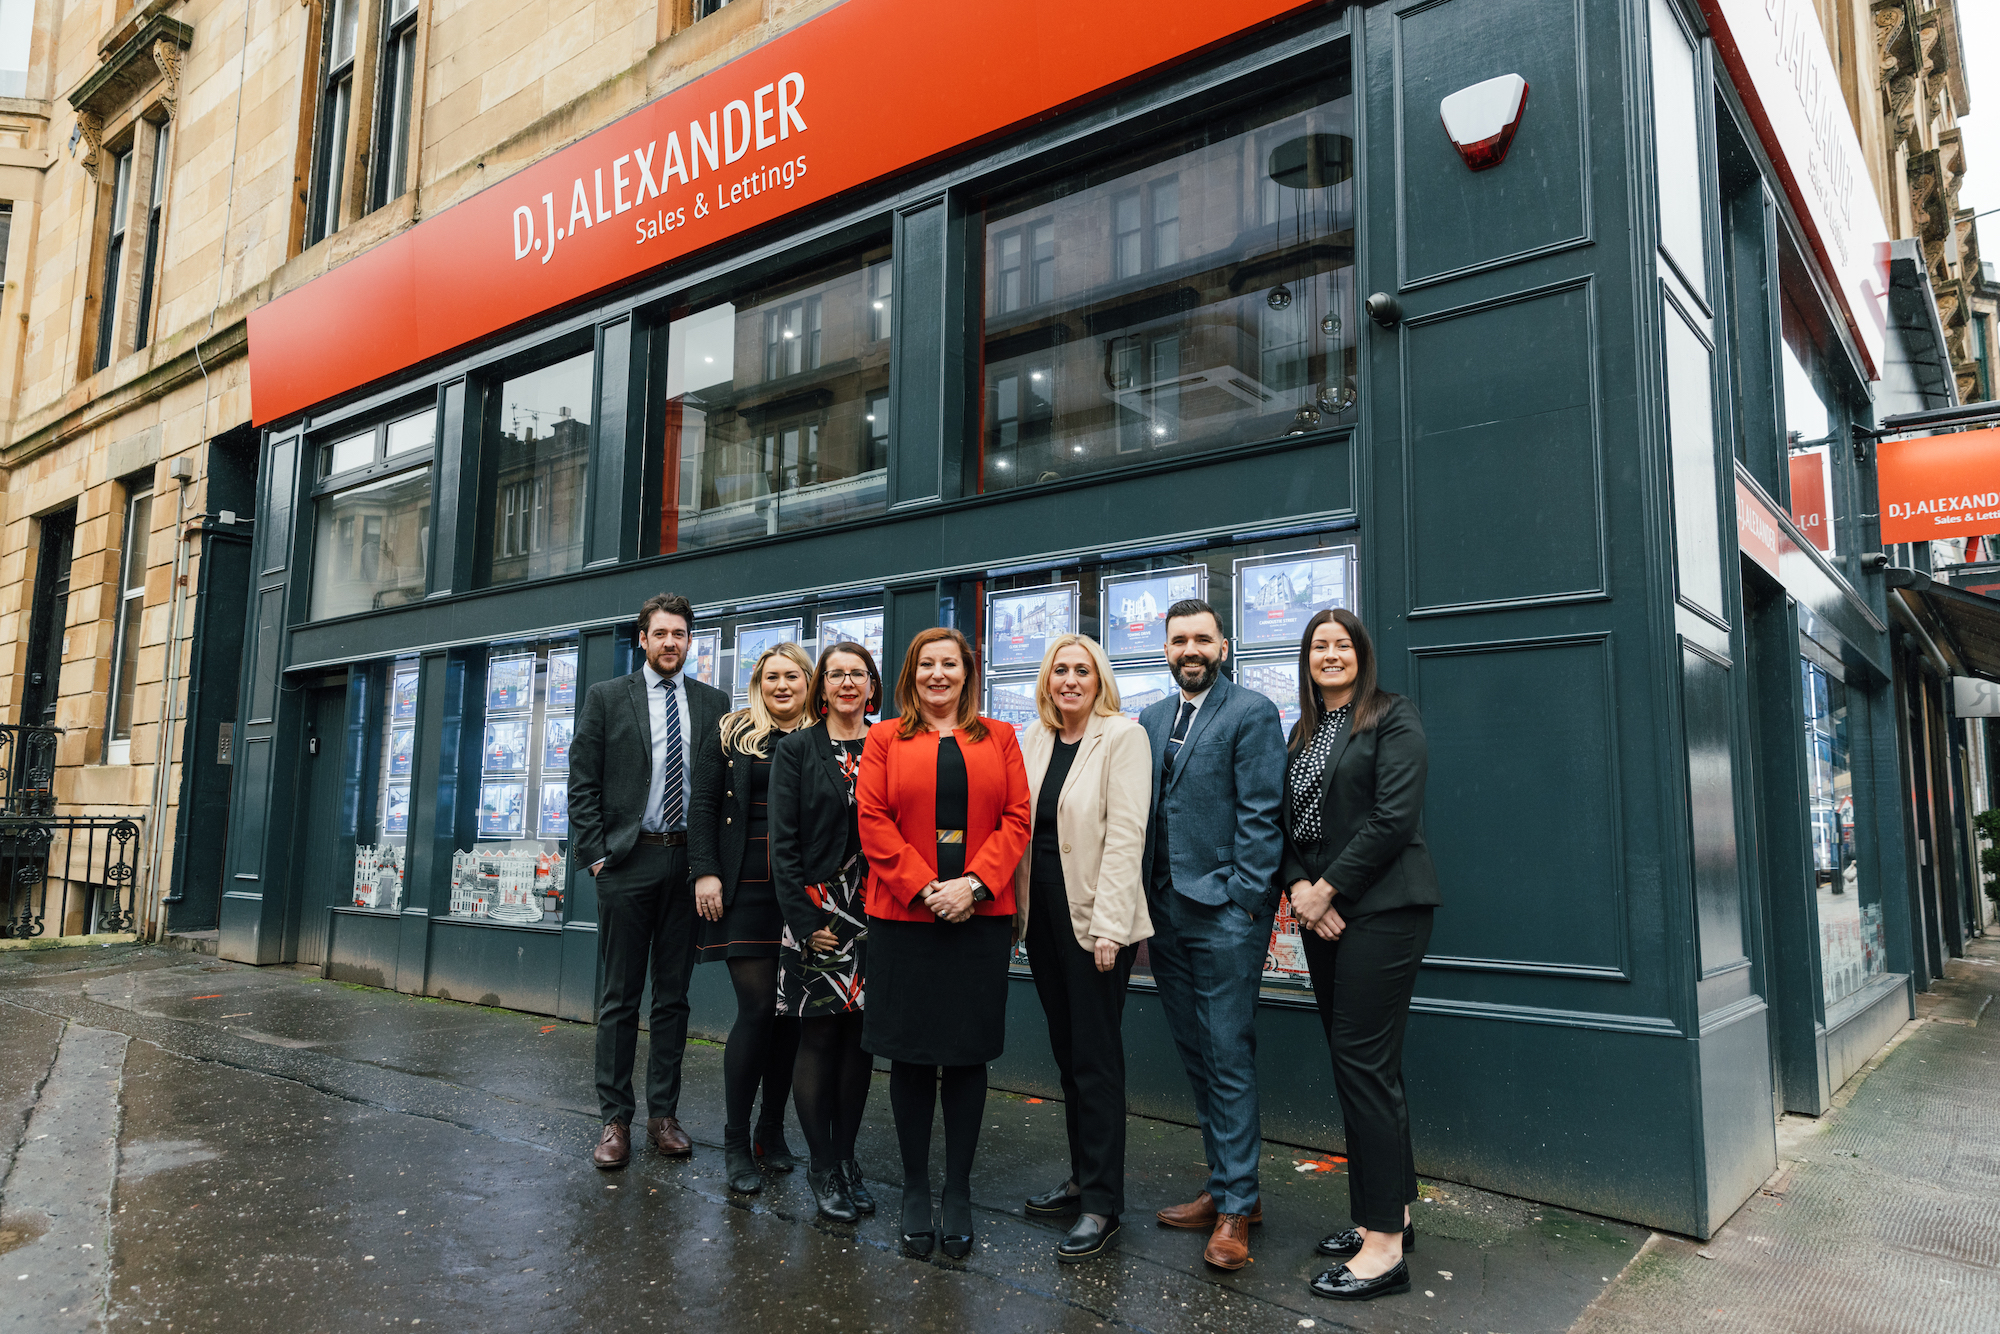 DJ Alexander opens new Glasgow location